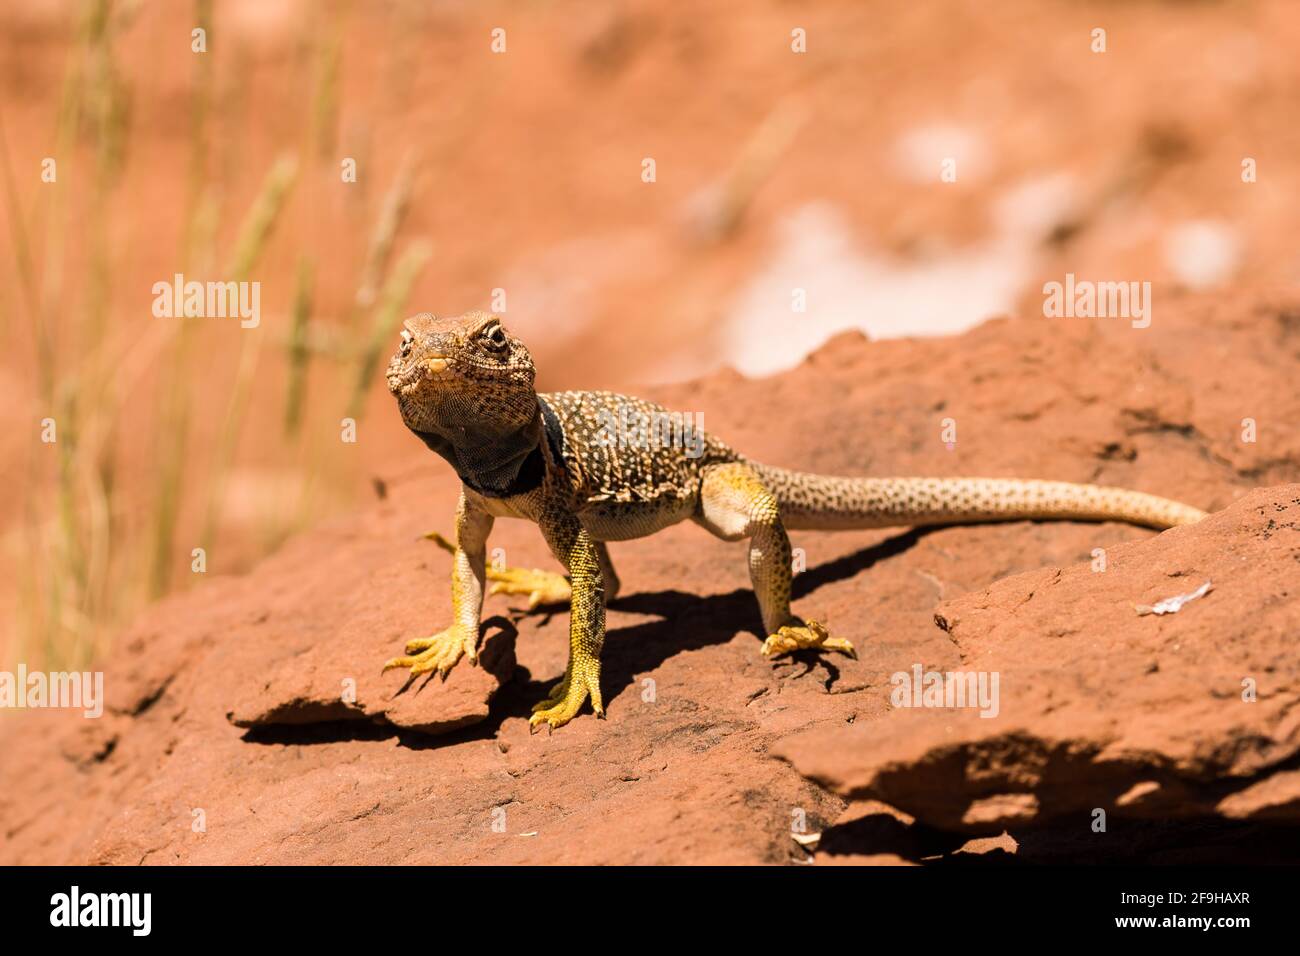 Ein männlicher Eidechse der Eastern Collared Lizard, Crotaphytus collaris, der sich in der Sonne sonnt, um seine Körpertemperatur zu erhöhen. Weil Eidechsen kaltblütig sind, reglementiern sie Stockfoto